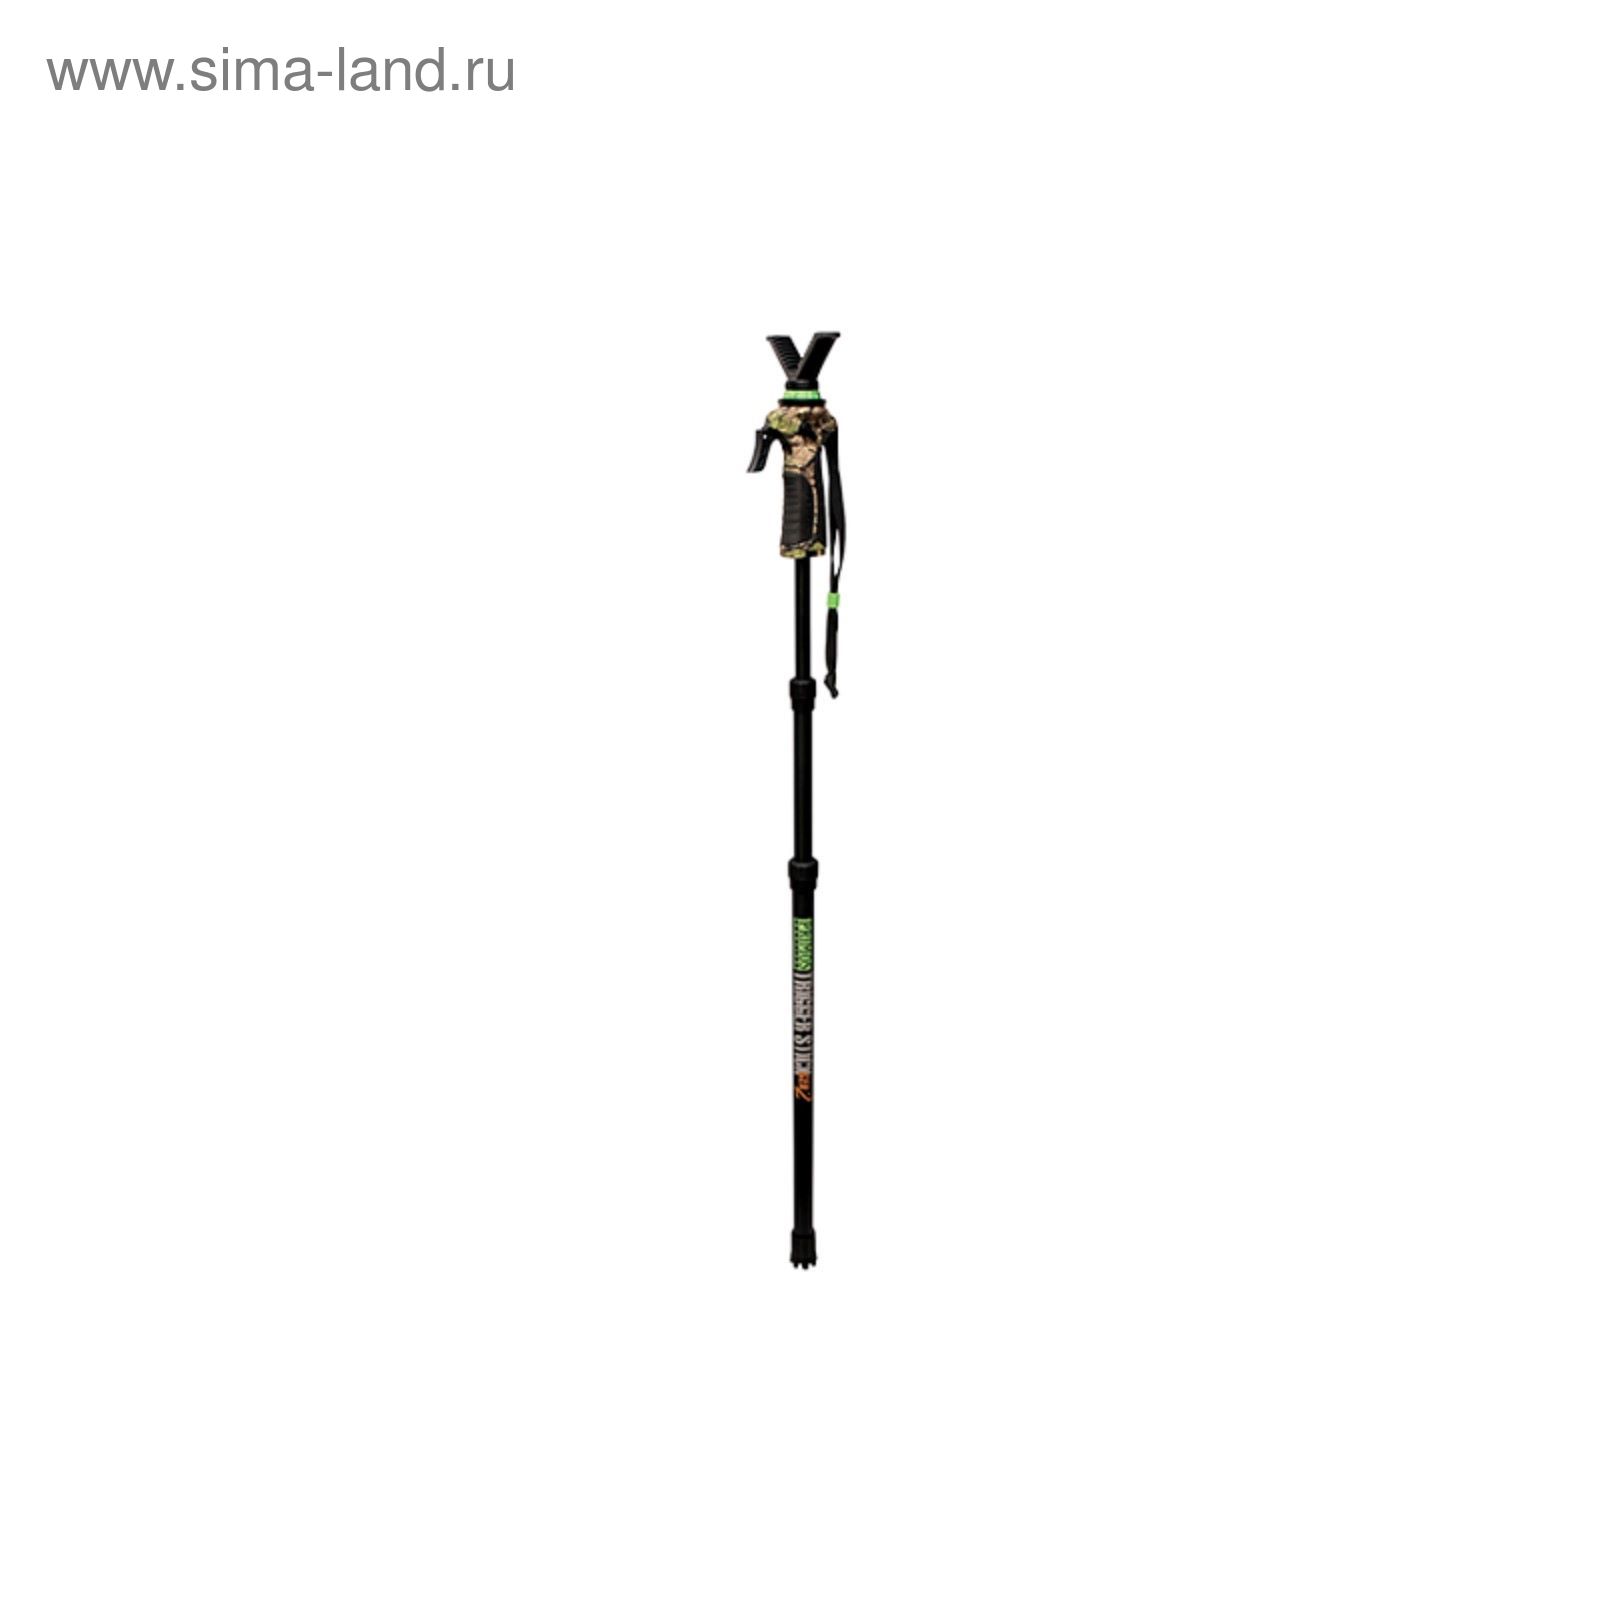 Опора для ружья Primos Trigger Stick™ Gen2 1 нога, 84-165 см